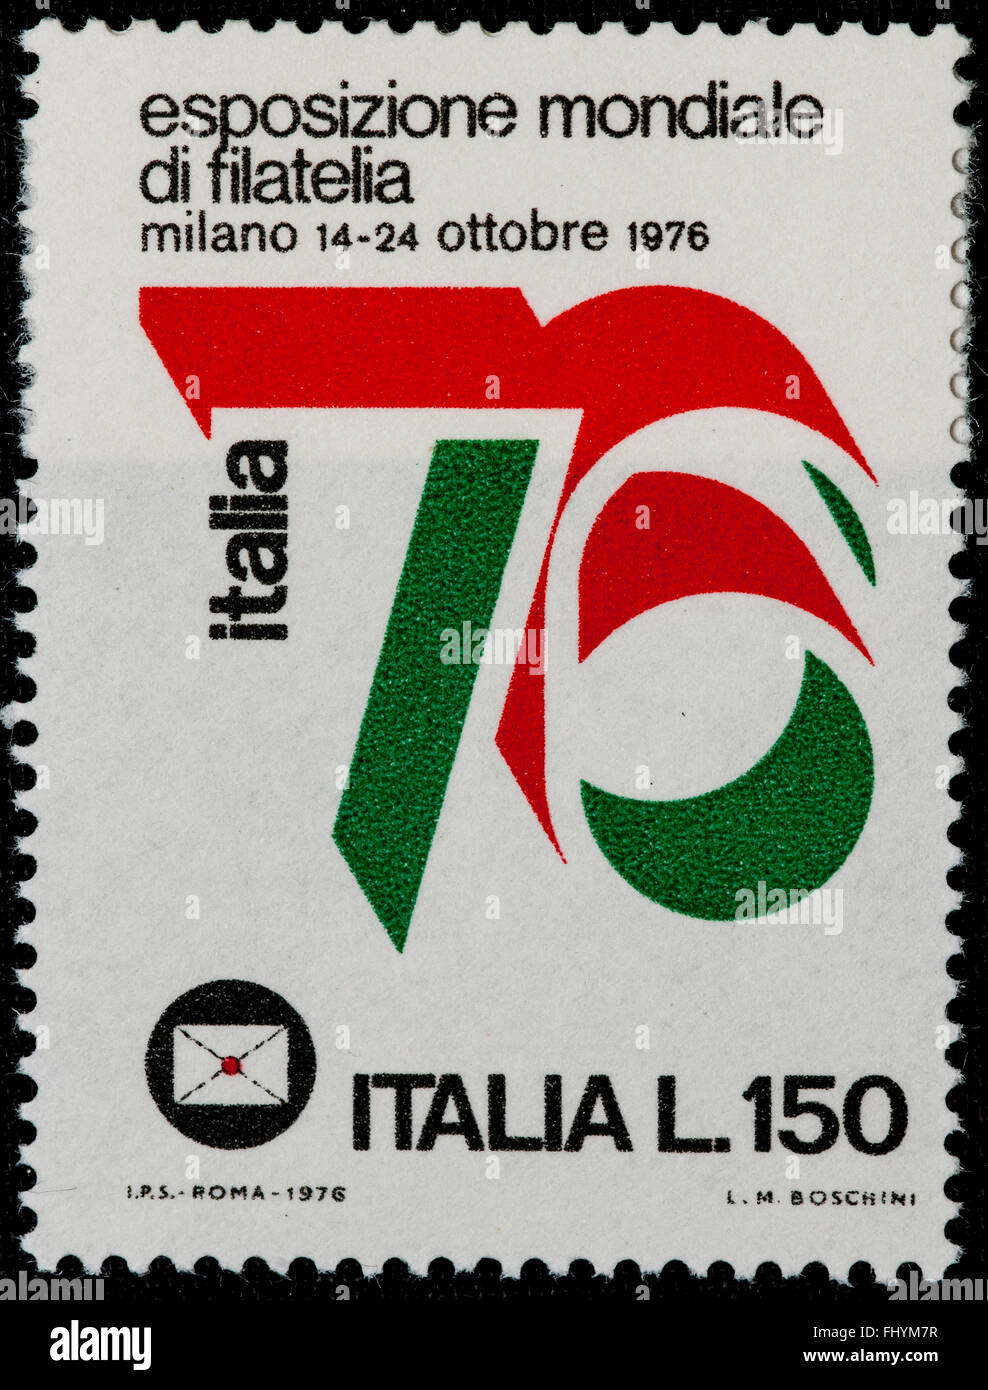 1976 - menta ITALIANO sello emitido para celebrar la expo filatelia en todo el mundo. 150 liras Foto de stock